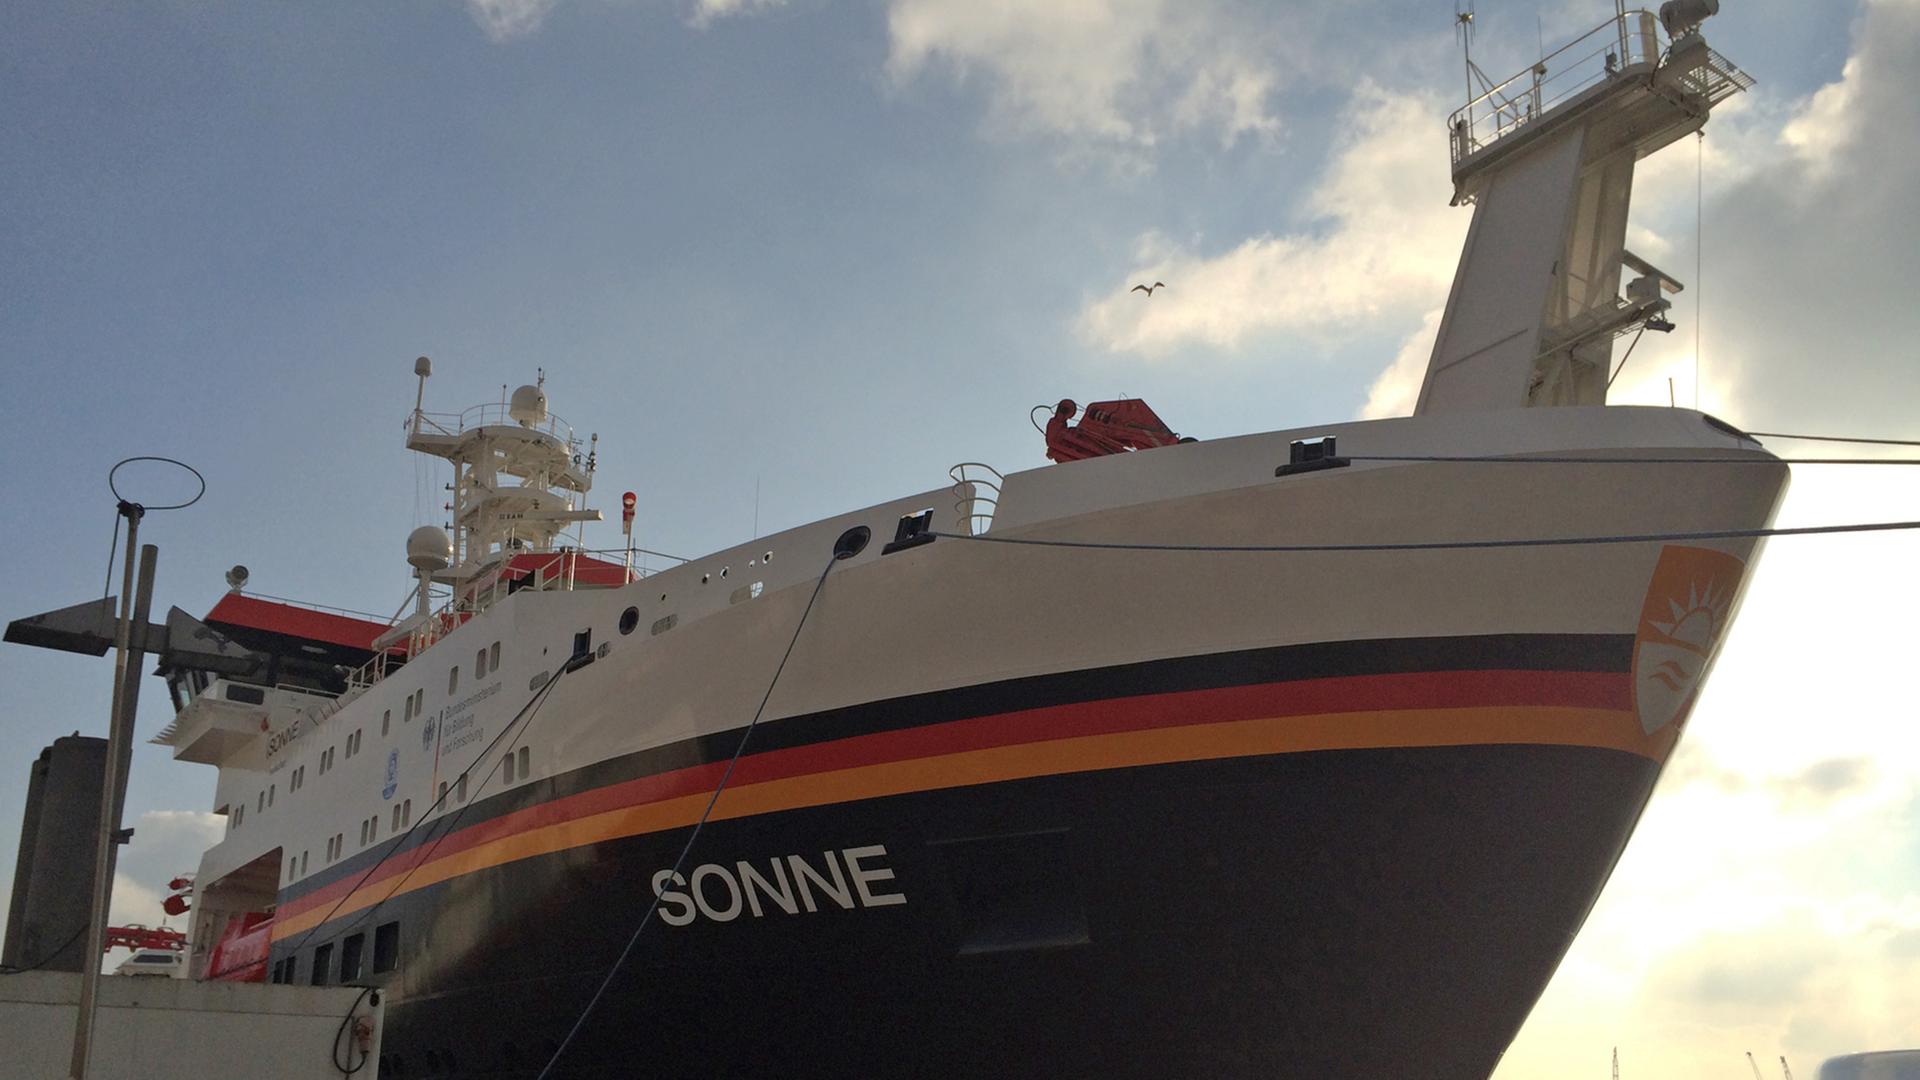 Das neue Forschungsschiff "Sonne" am Kai in Hamburg.